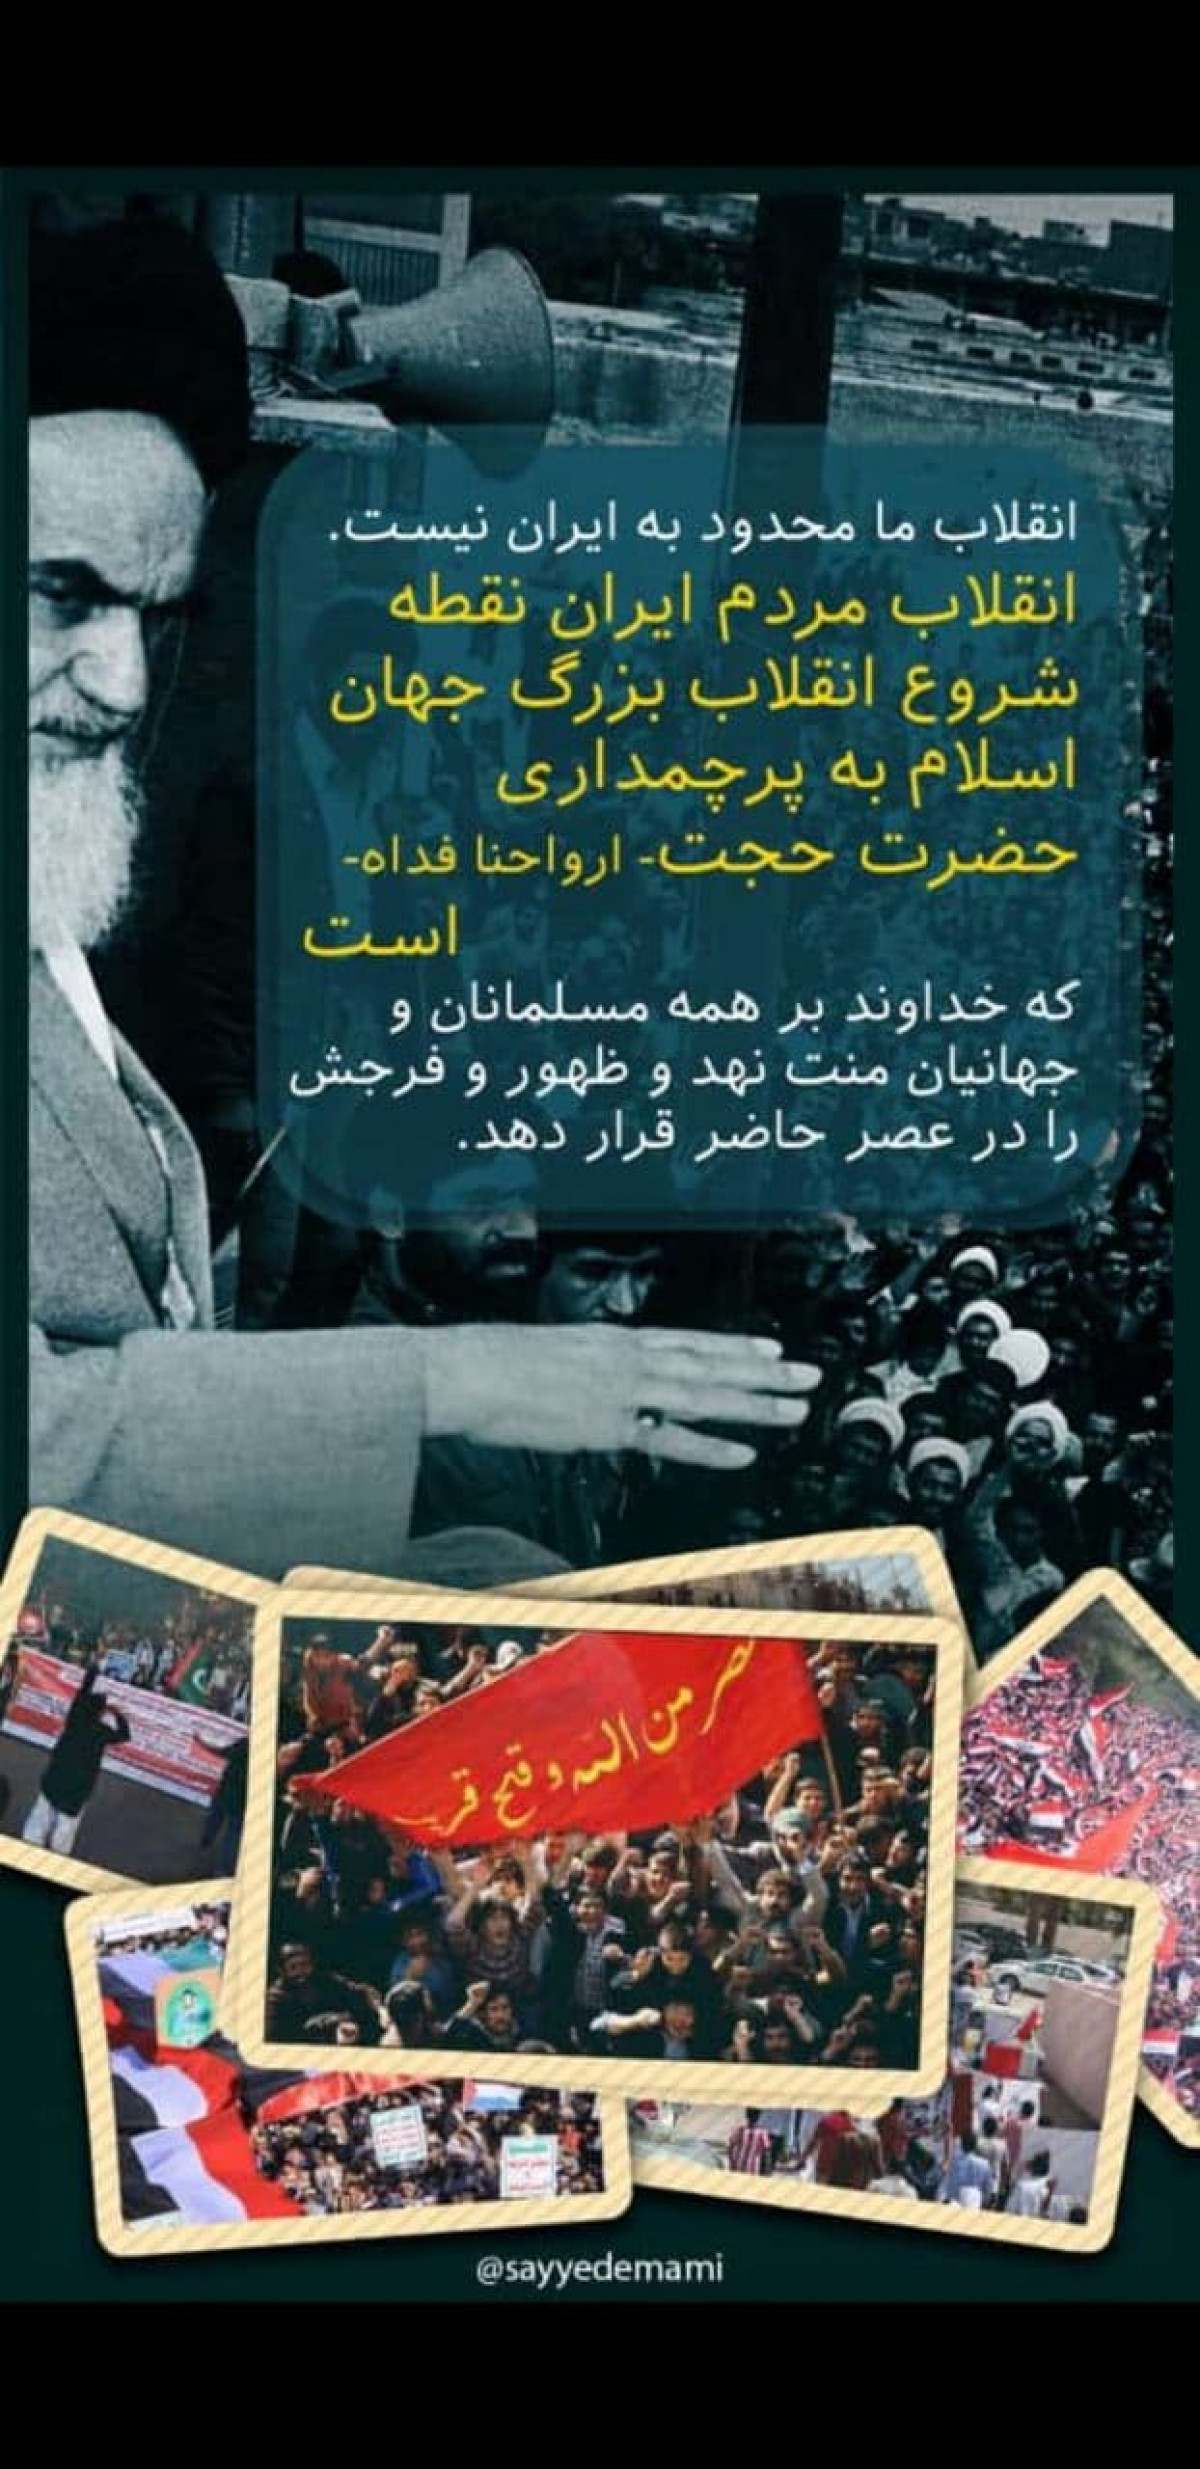 پوستر : انقلاب ما مربوط به ایران نیست